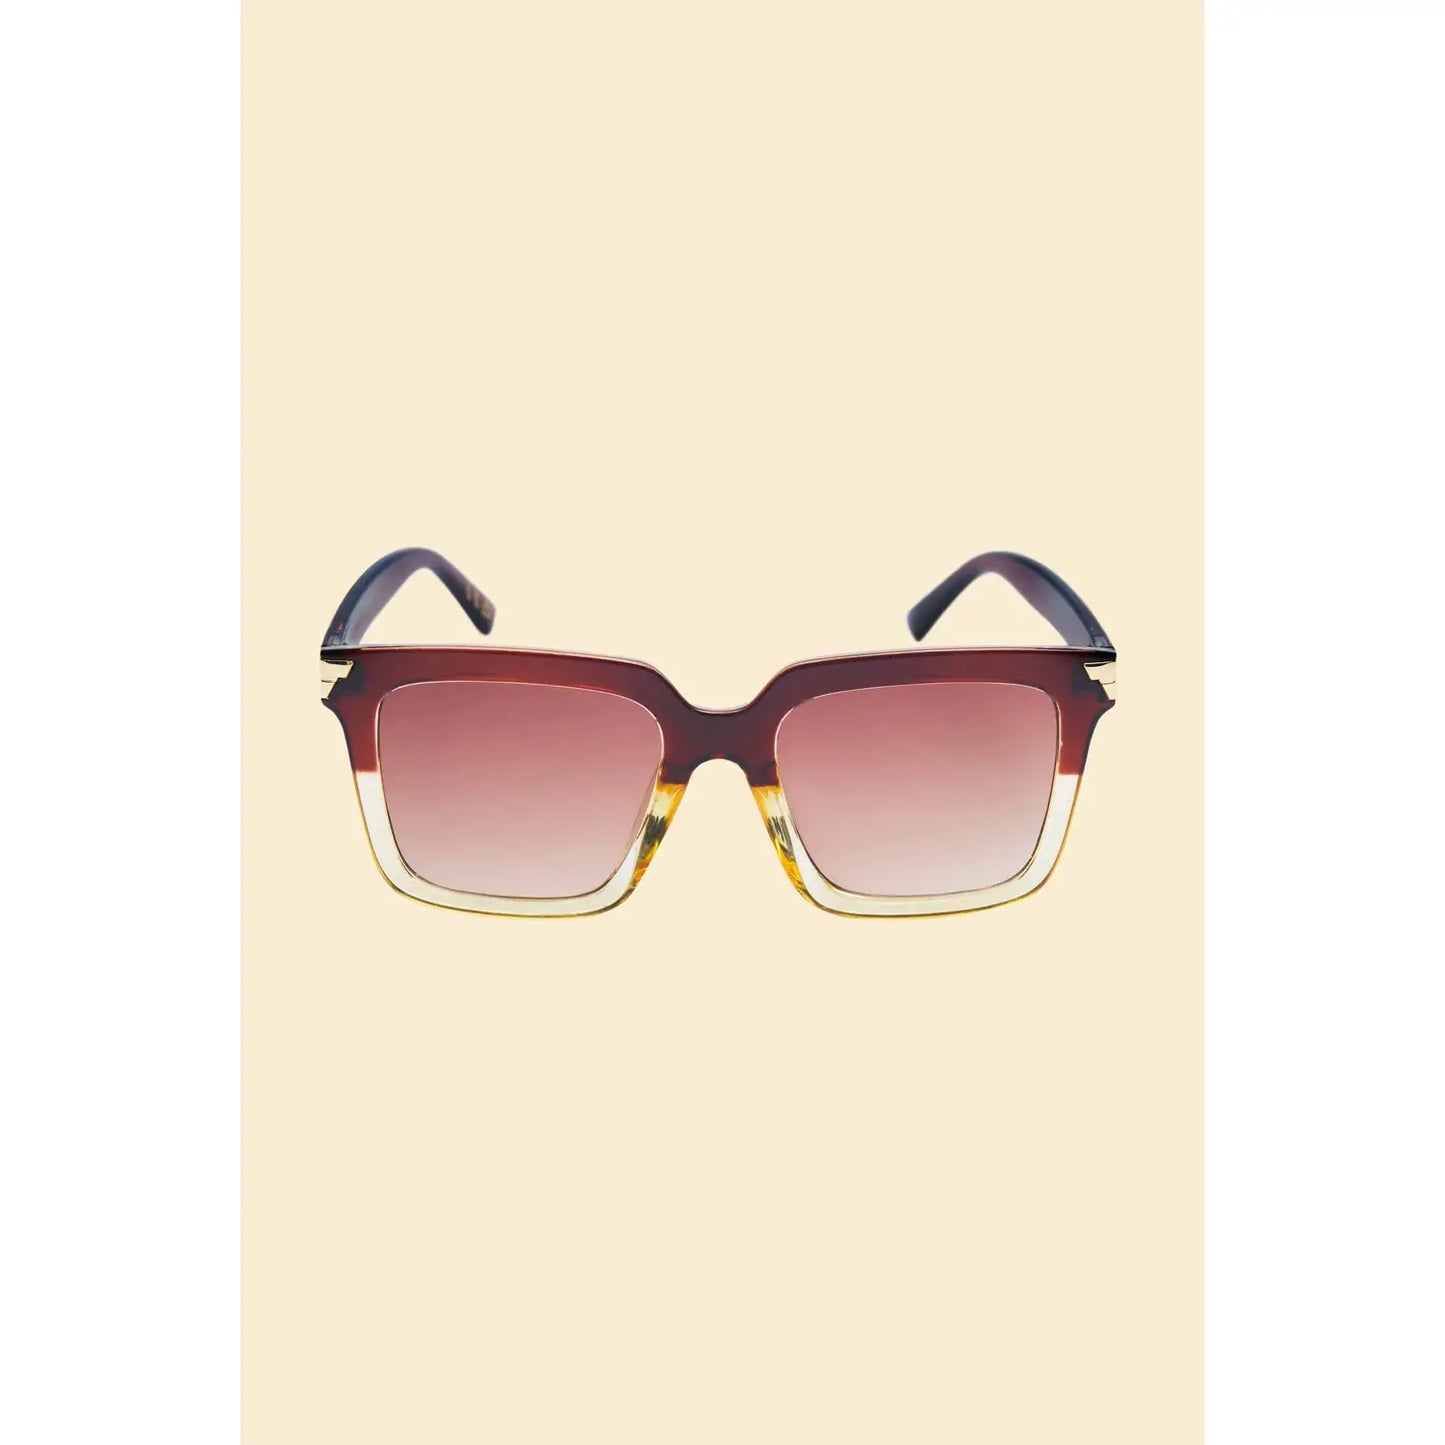 Luxe Fallon Sunglasses